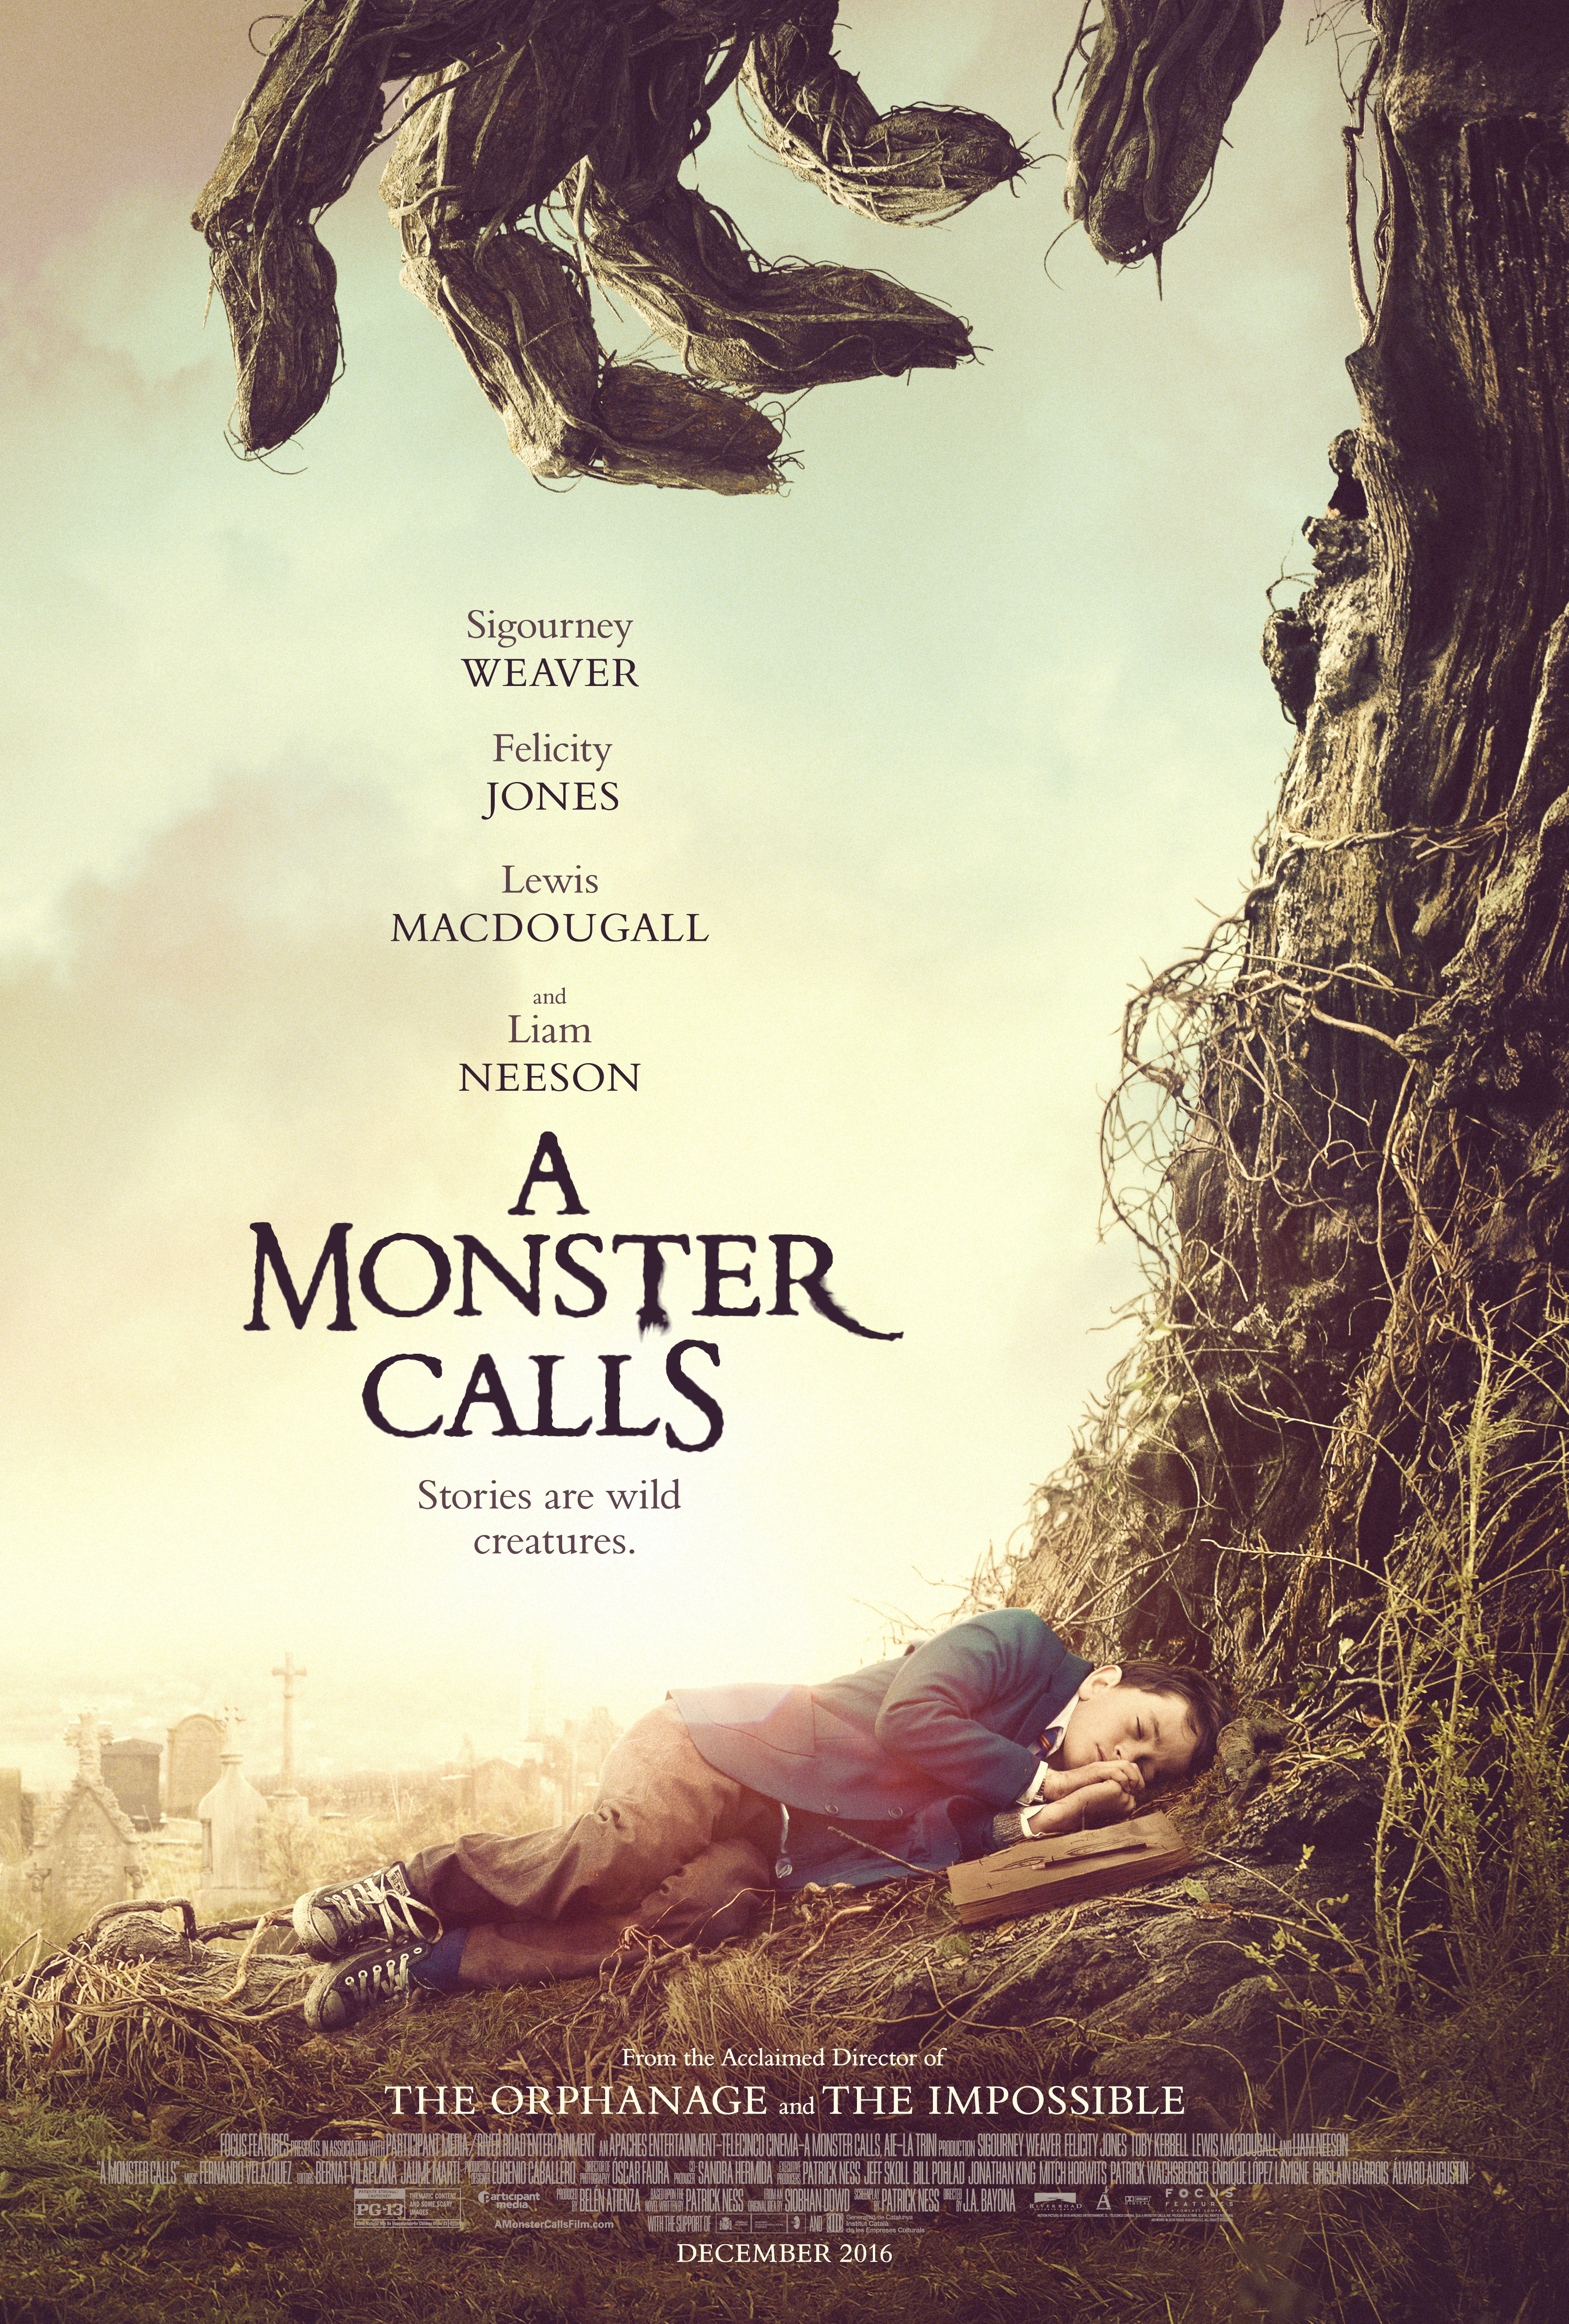 Nonton film A Monster Calls layarkaca21 indoxx1 ganool online streaming terbaru